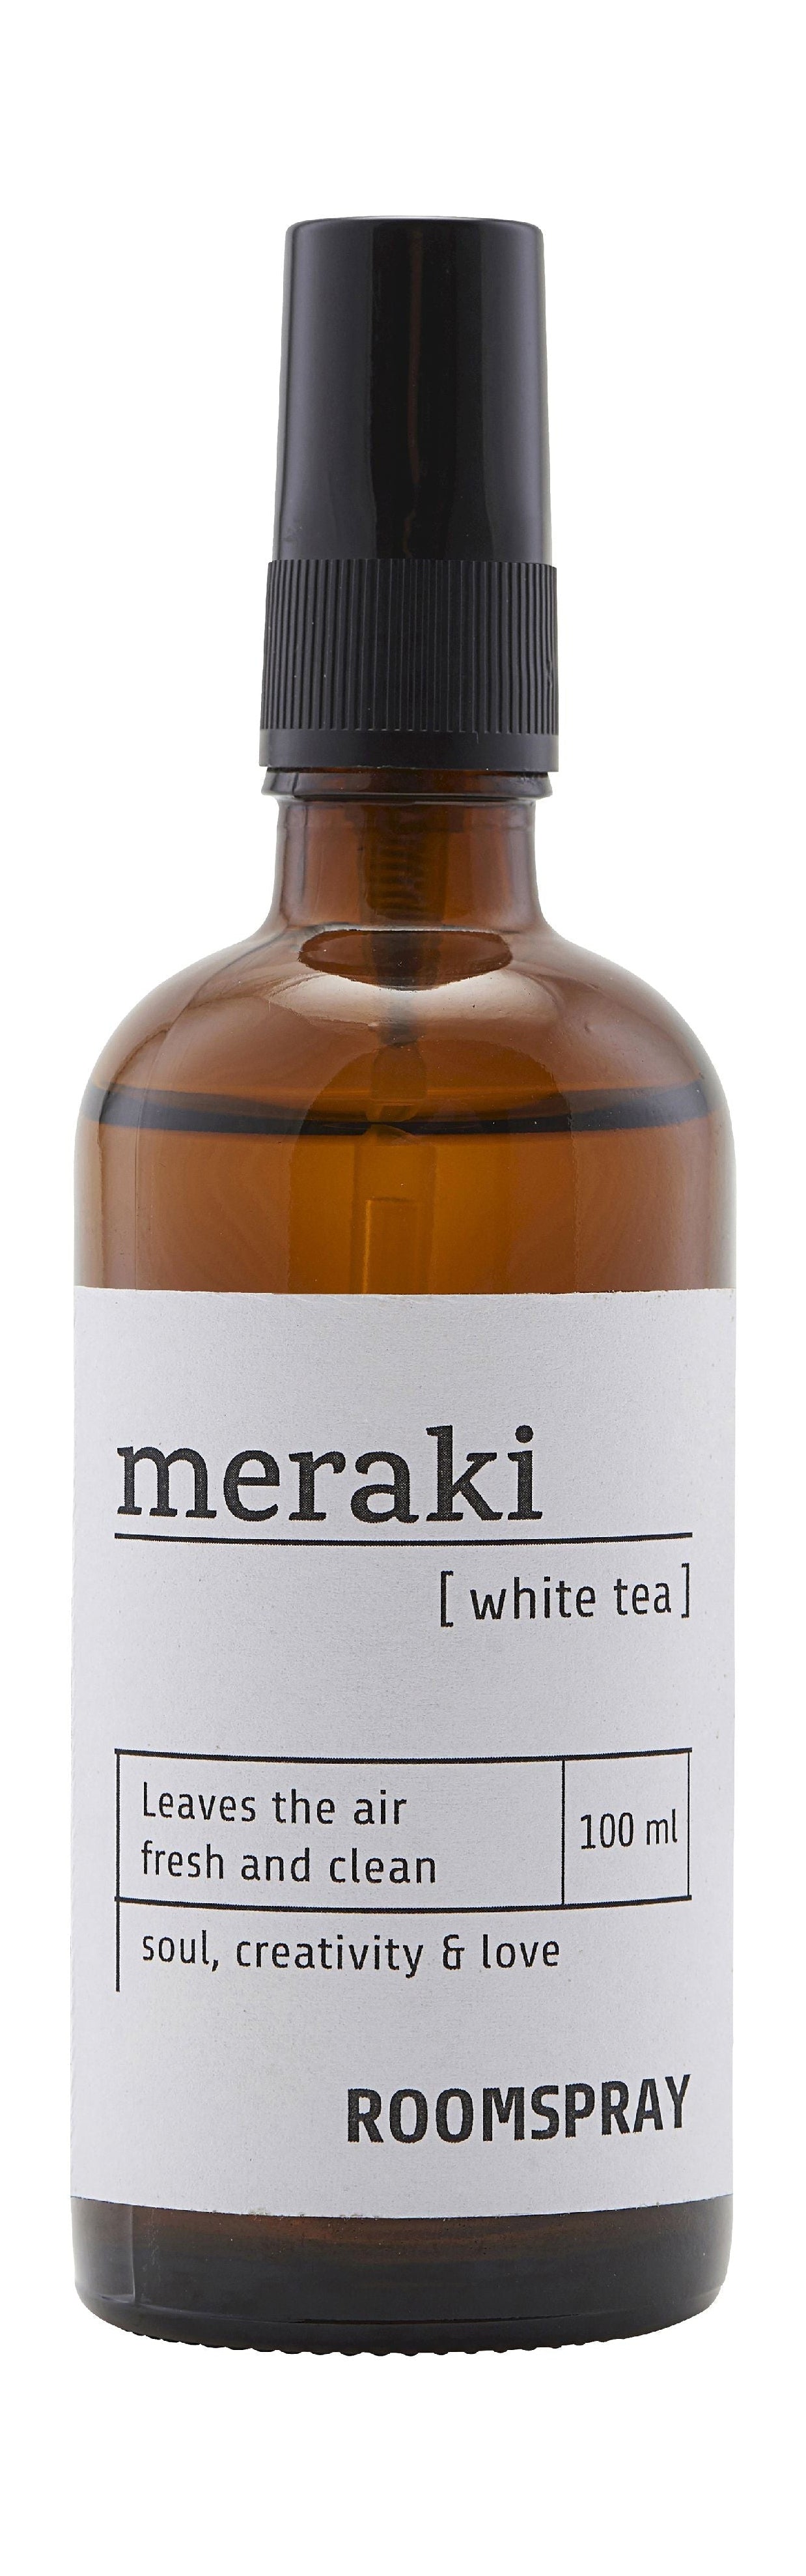 Meraki Room Spray 100 Ml, White Tea